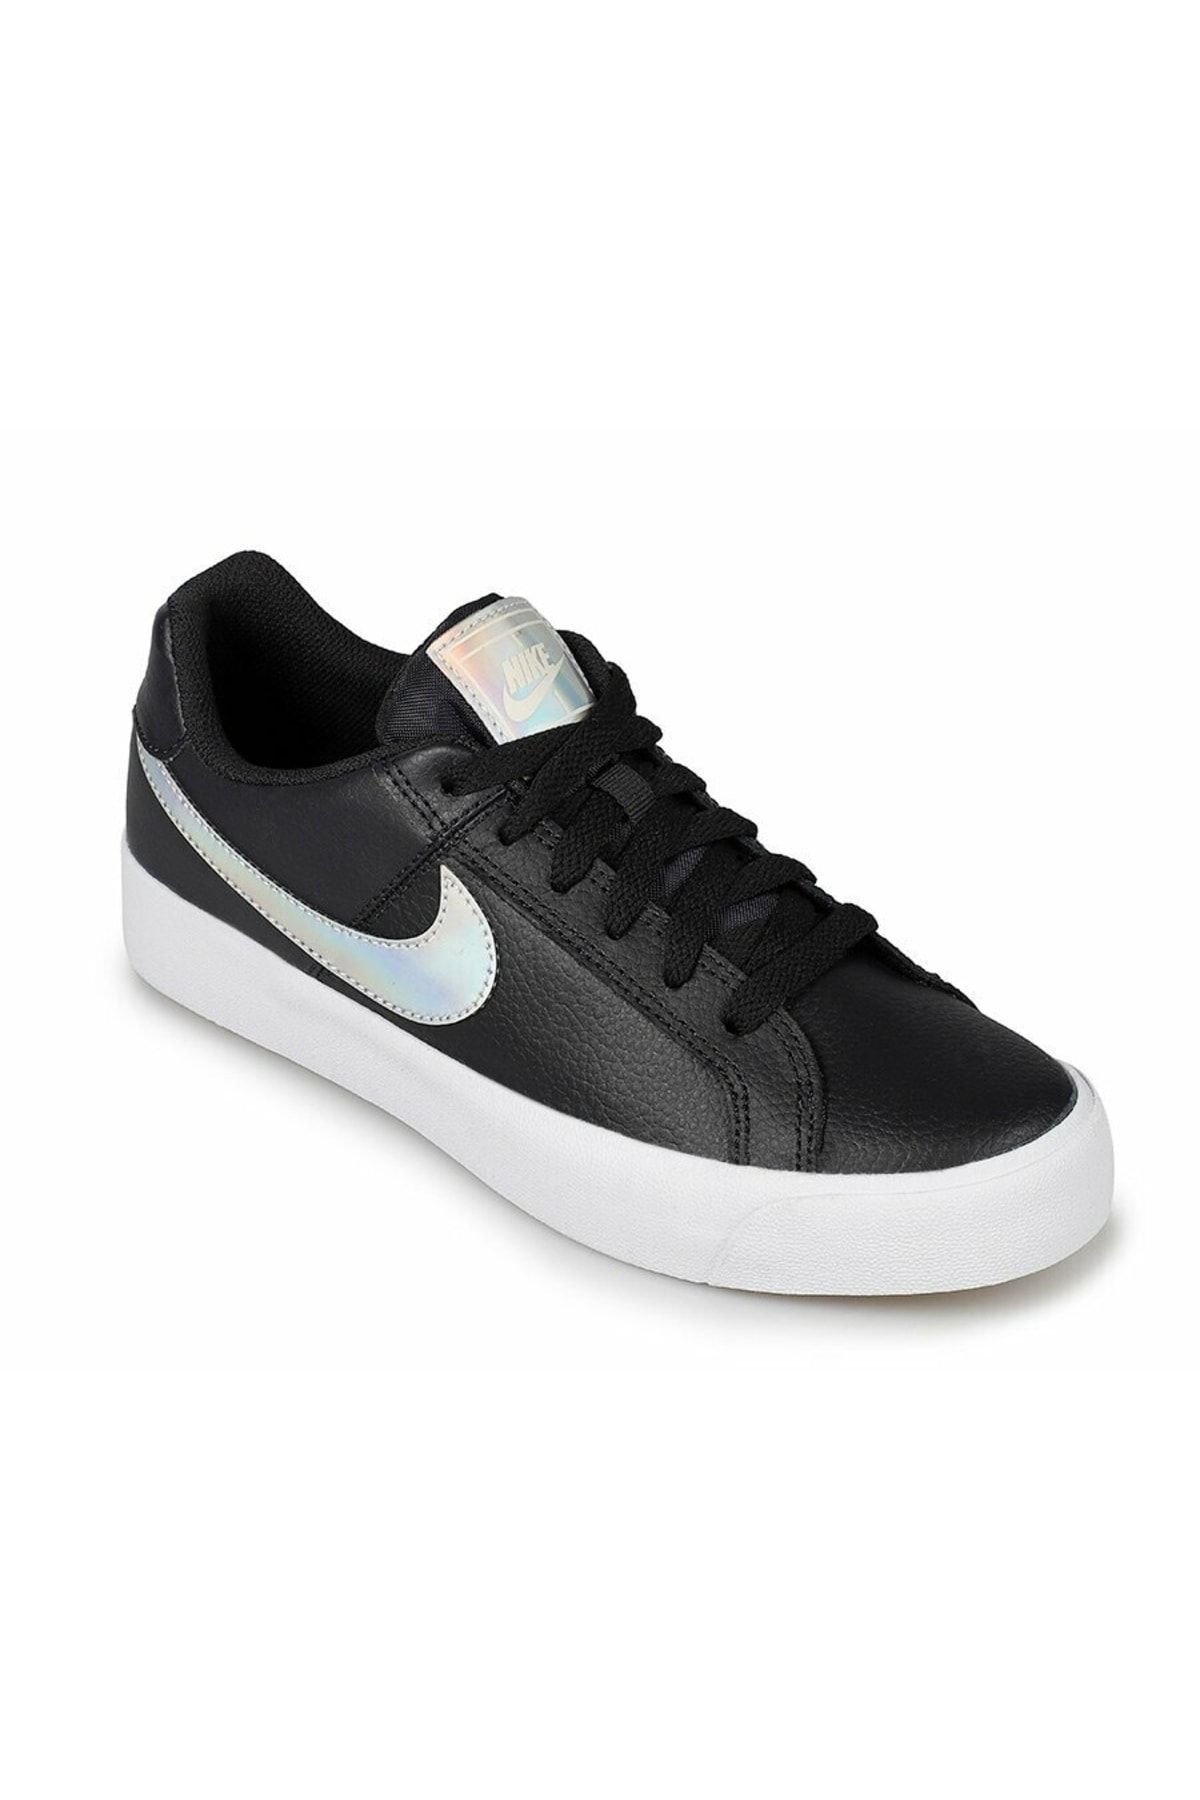 Nike Wmns Court Royale Ac Kadın Siyah Günlük Ayakkabı Ao2810-002